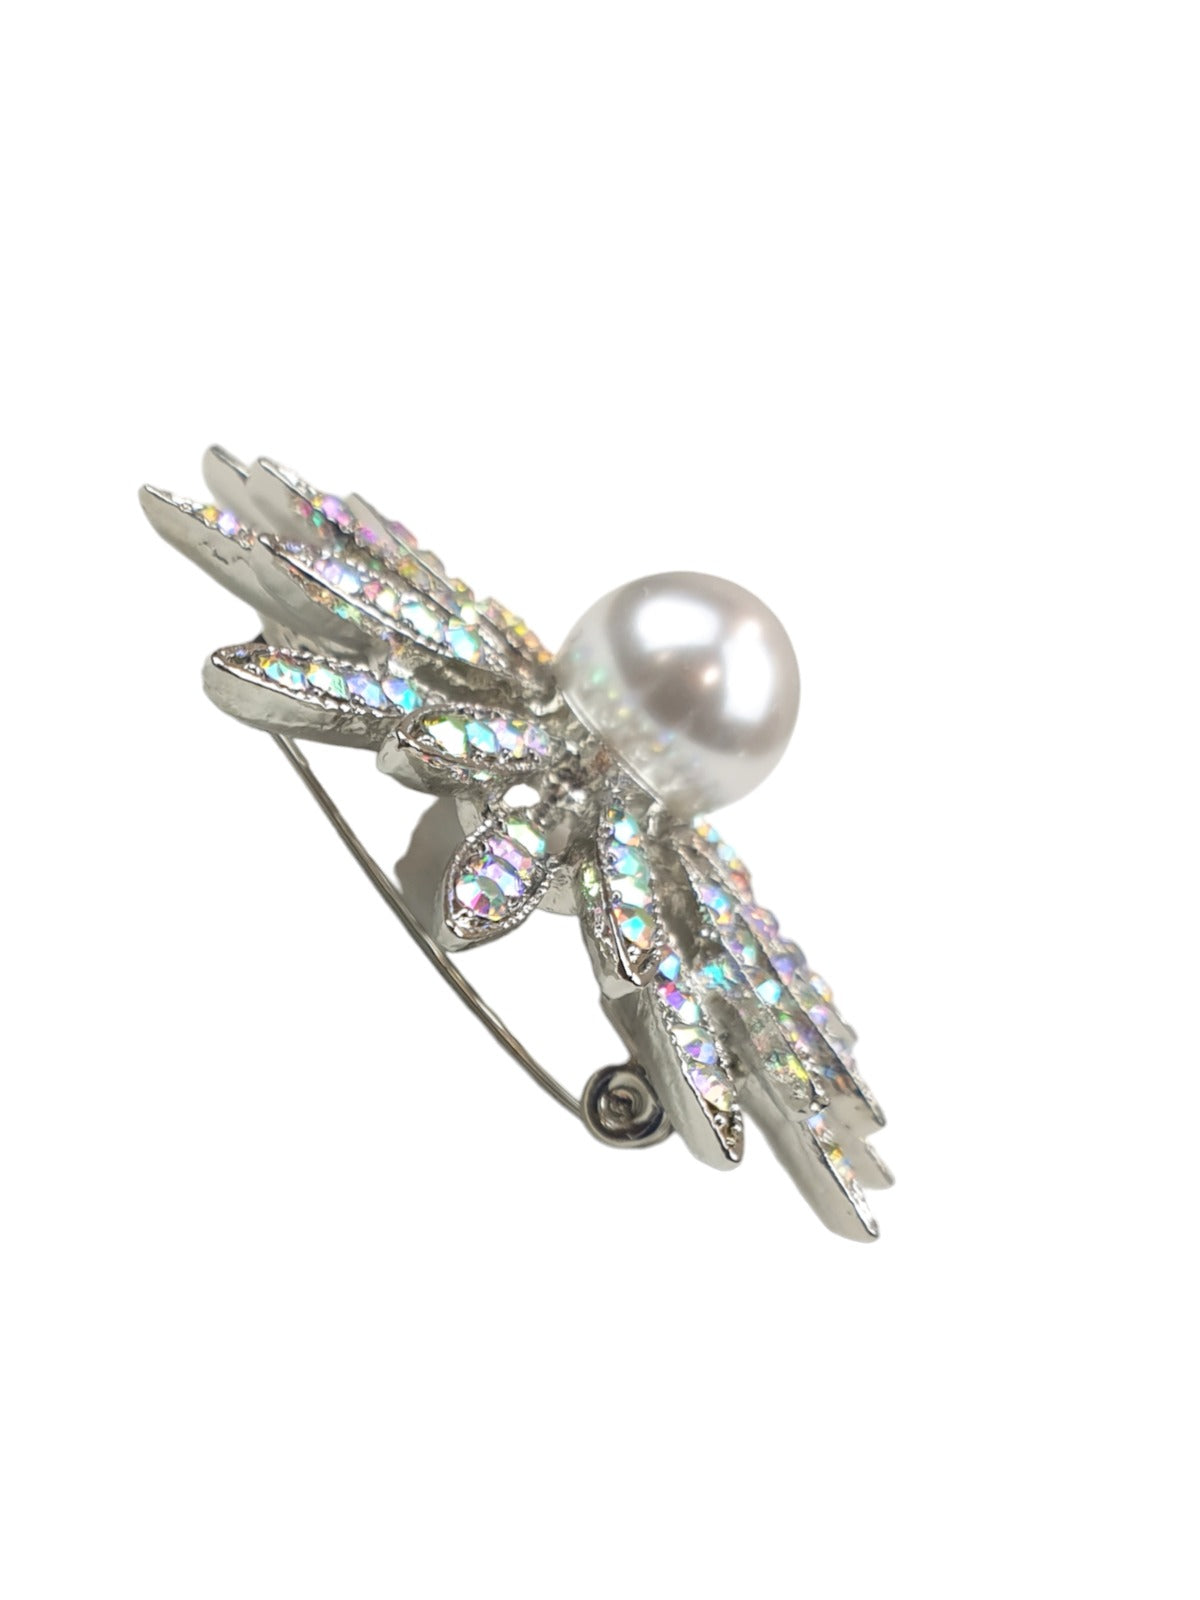 Floral Cluster Diamante Brooch Silver